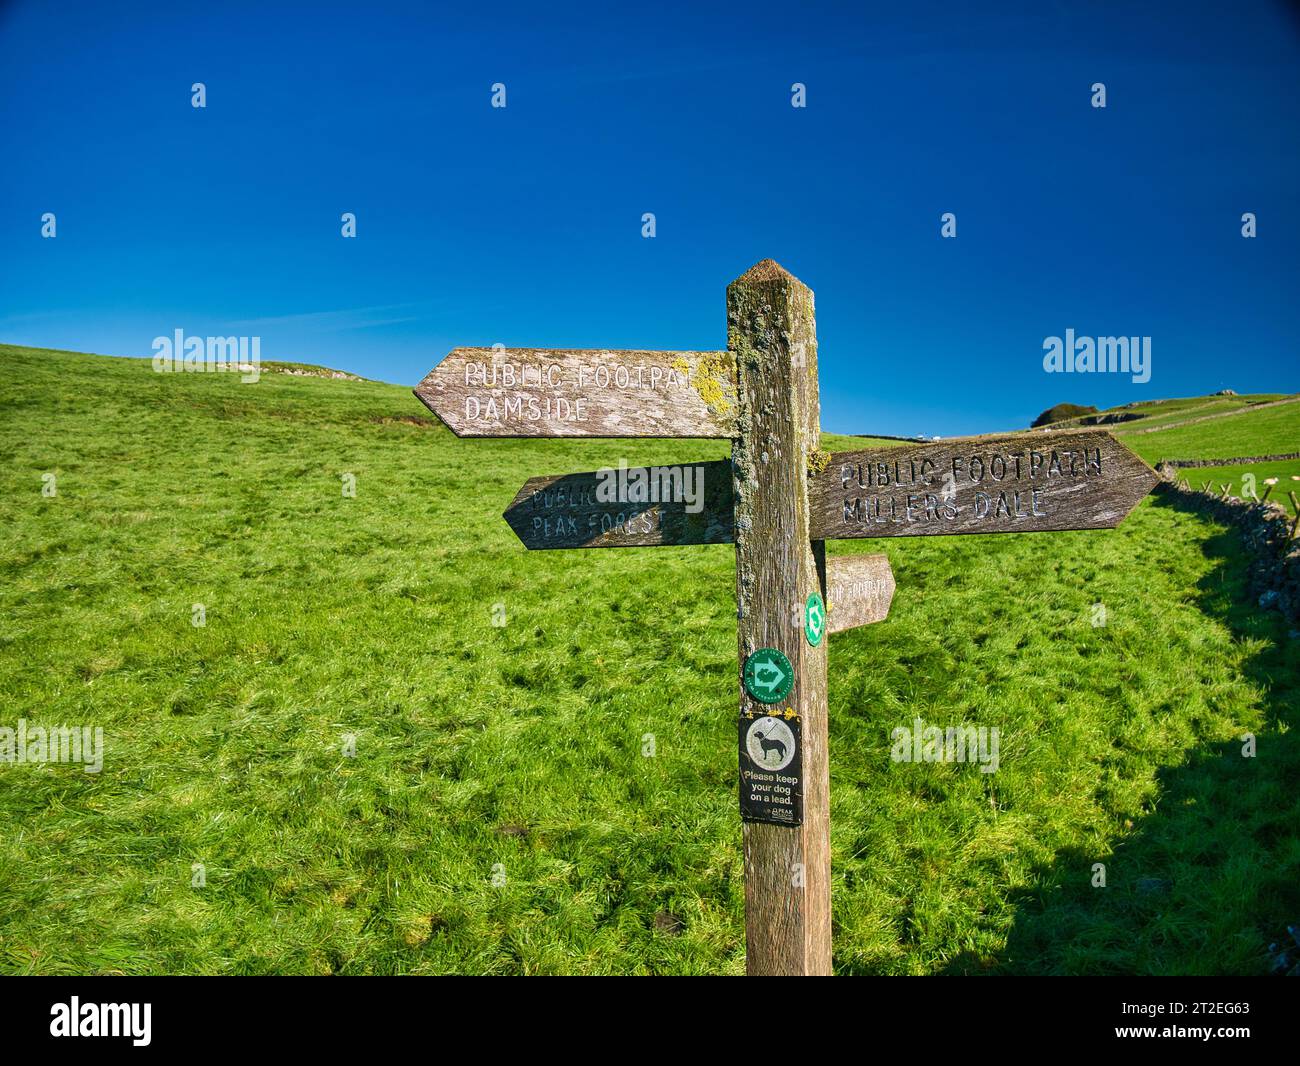 Le impronte digitali in legno esposte agli agenti atmosferici indicano la strada per tre diversi luoghi nel Peak District nel Derbyshire, Regno Unito. Preso in una giornata di sole con un cielo blu. Foto Stock